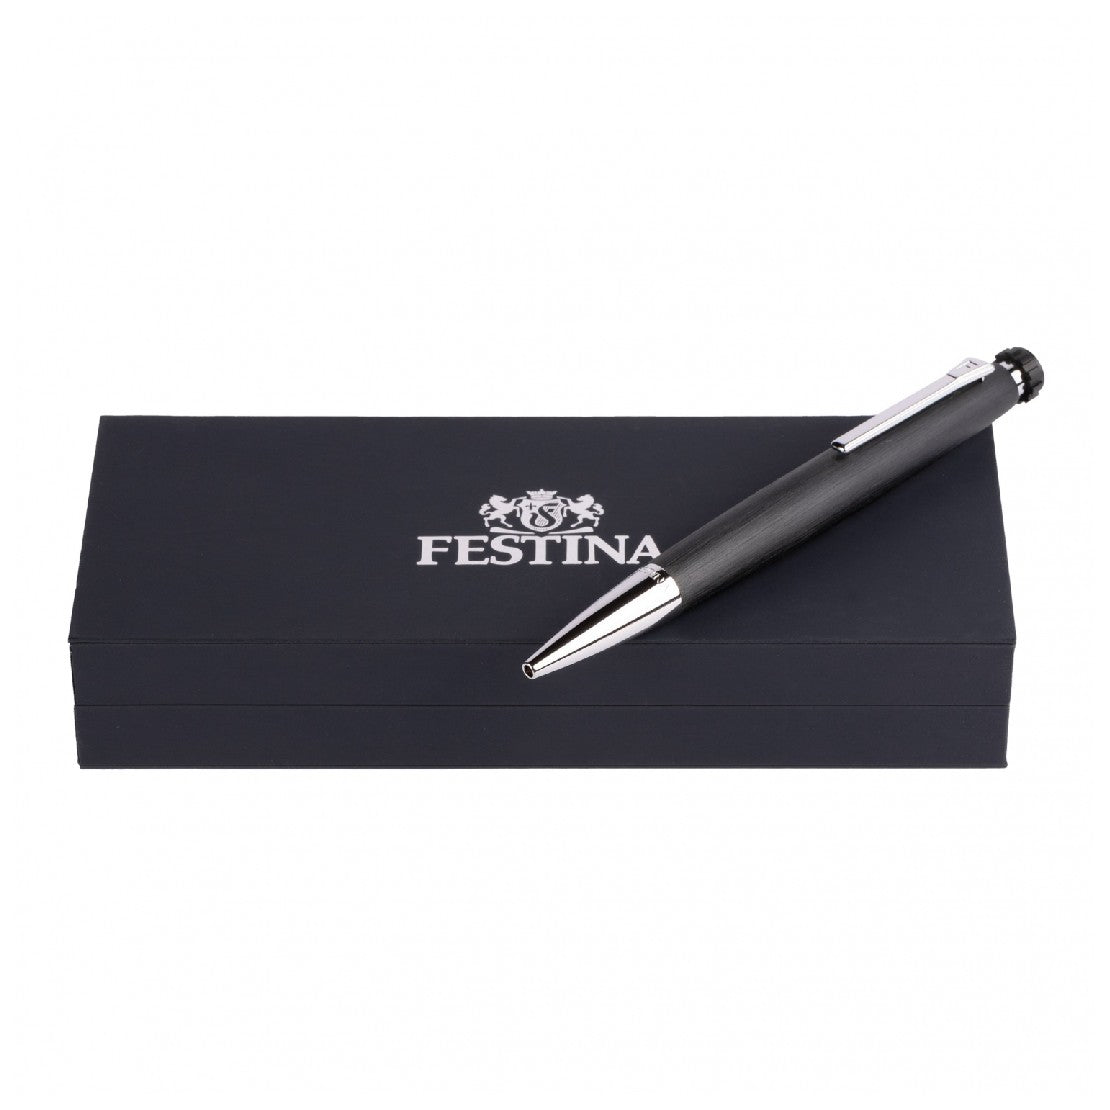 Festina Black and Chrome Pen - FSPEN-0001